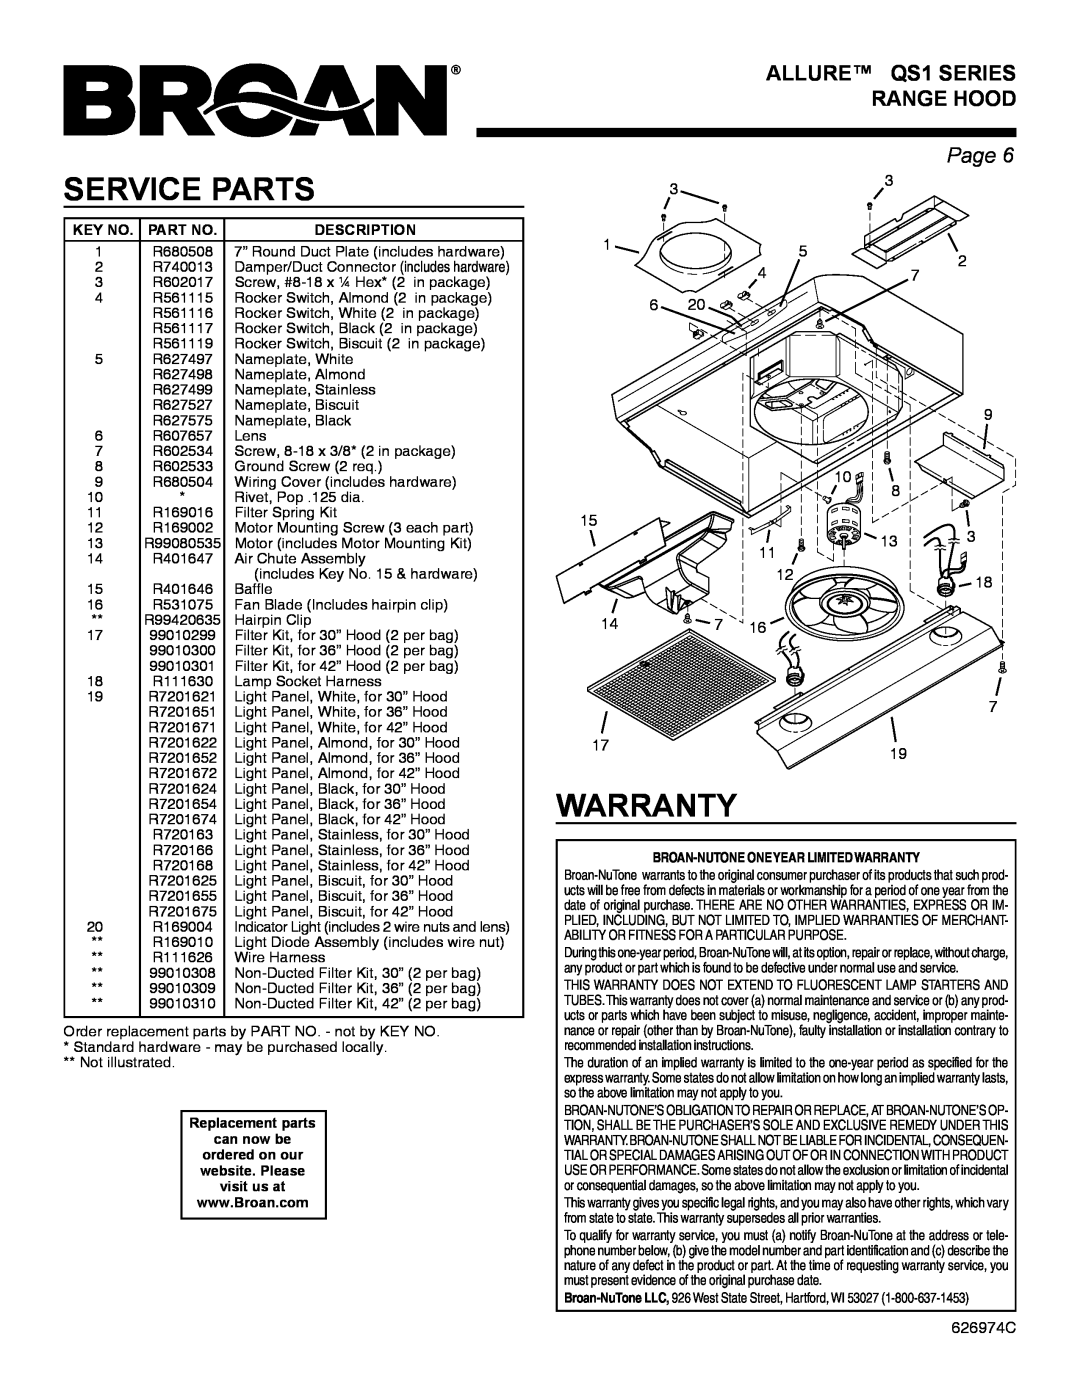 Broan warranty Service Parts, Warranty, ALLURE QS1 SERIES RANGE HOOD, Page 